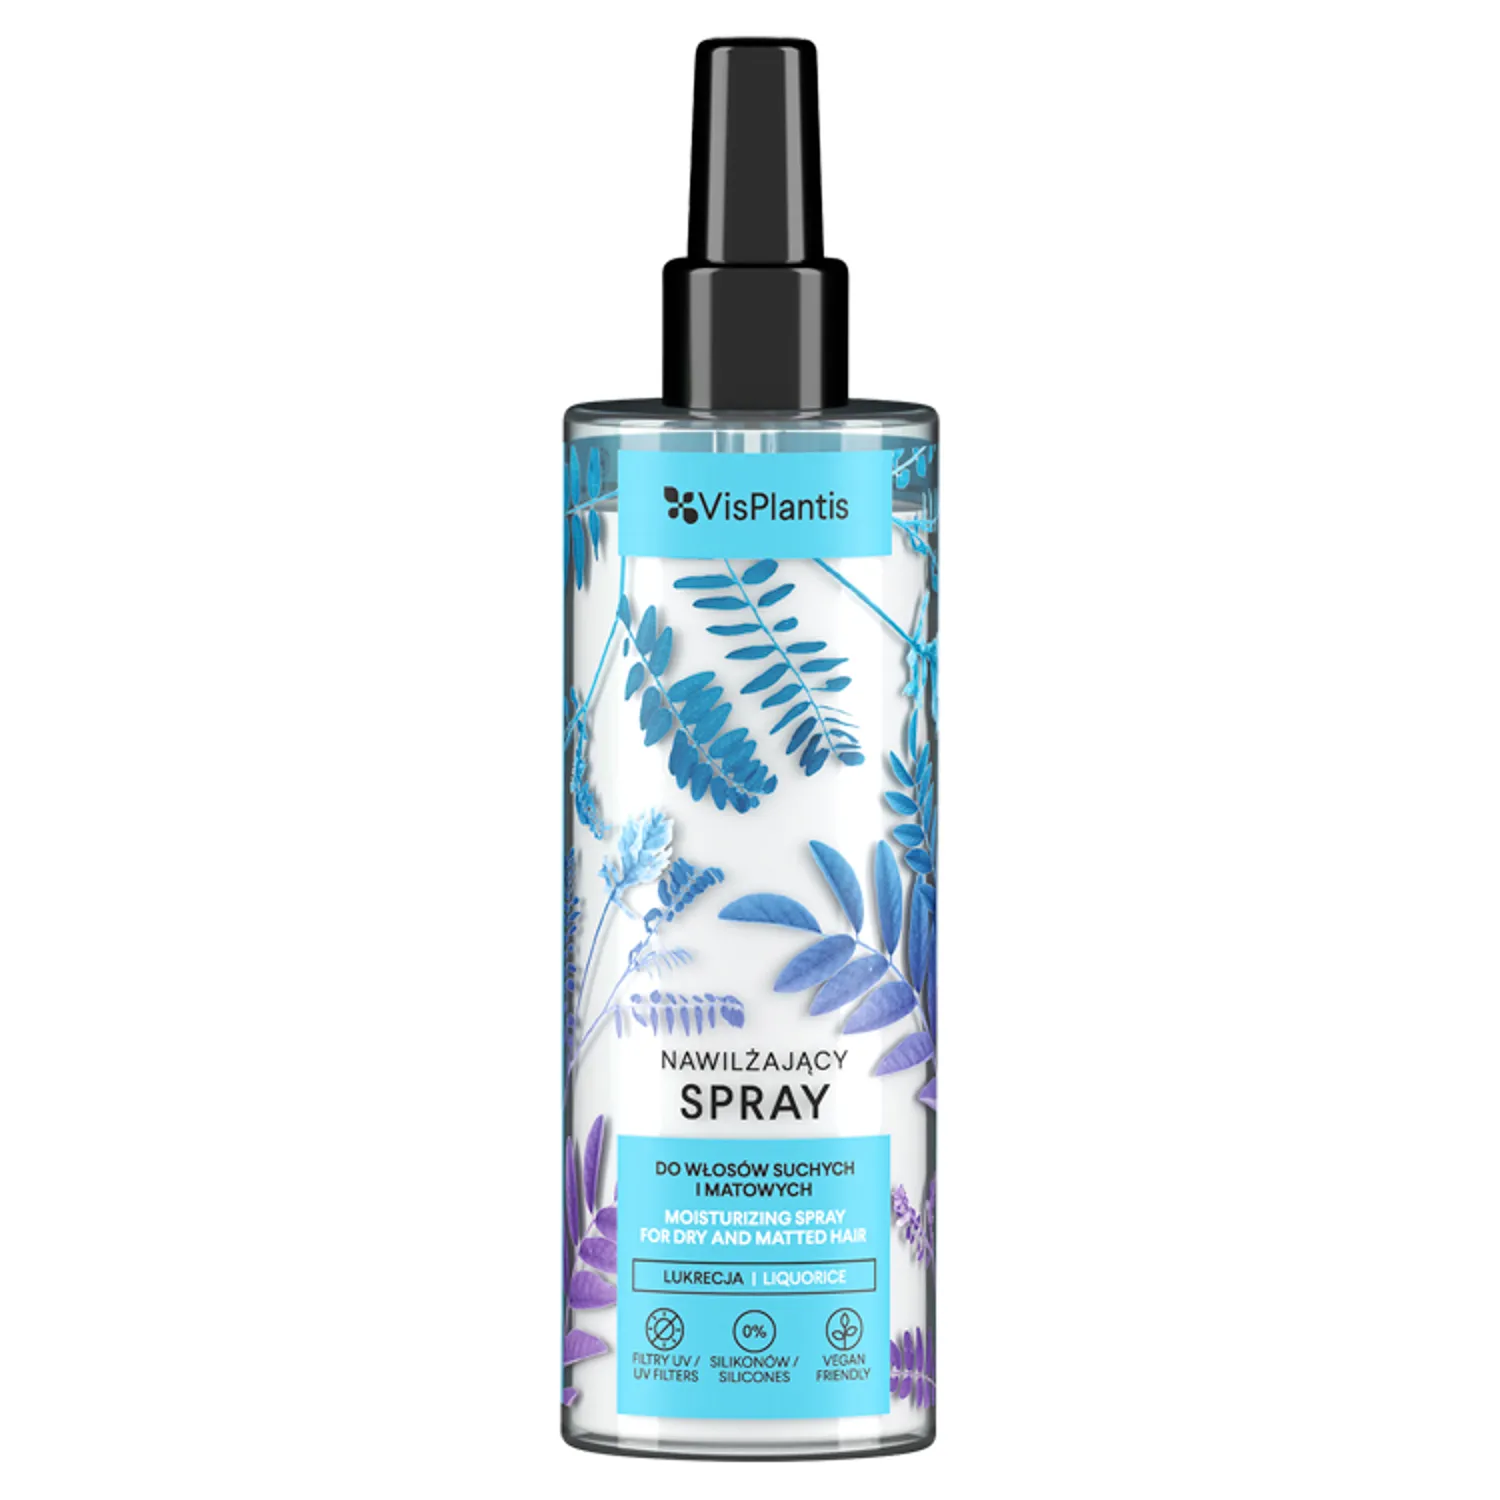 VisPlantis Nawilżający spray do włosów suchych i matowych, 200 ml